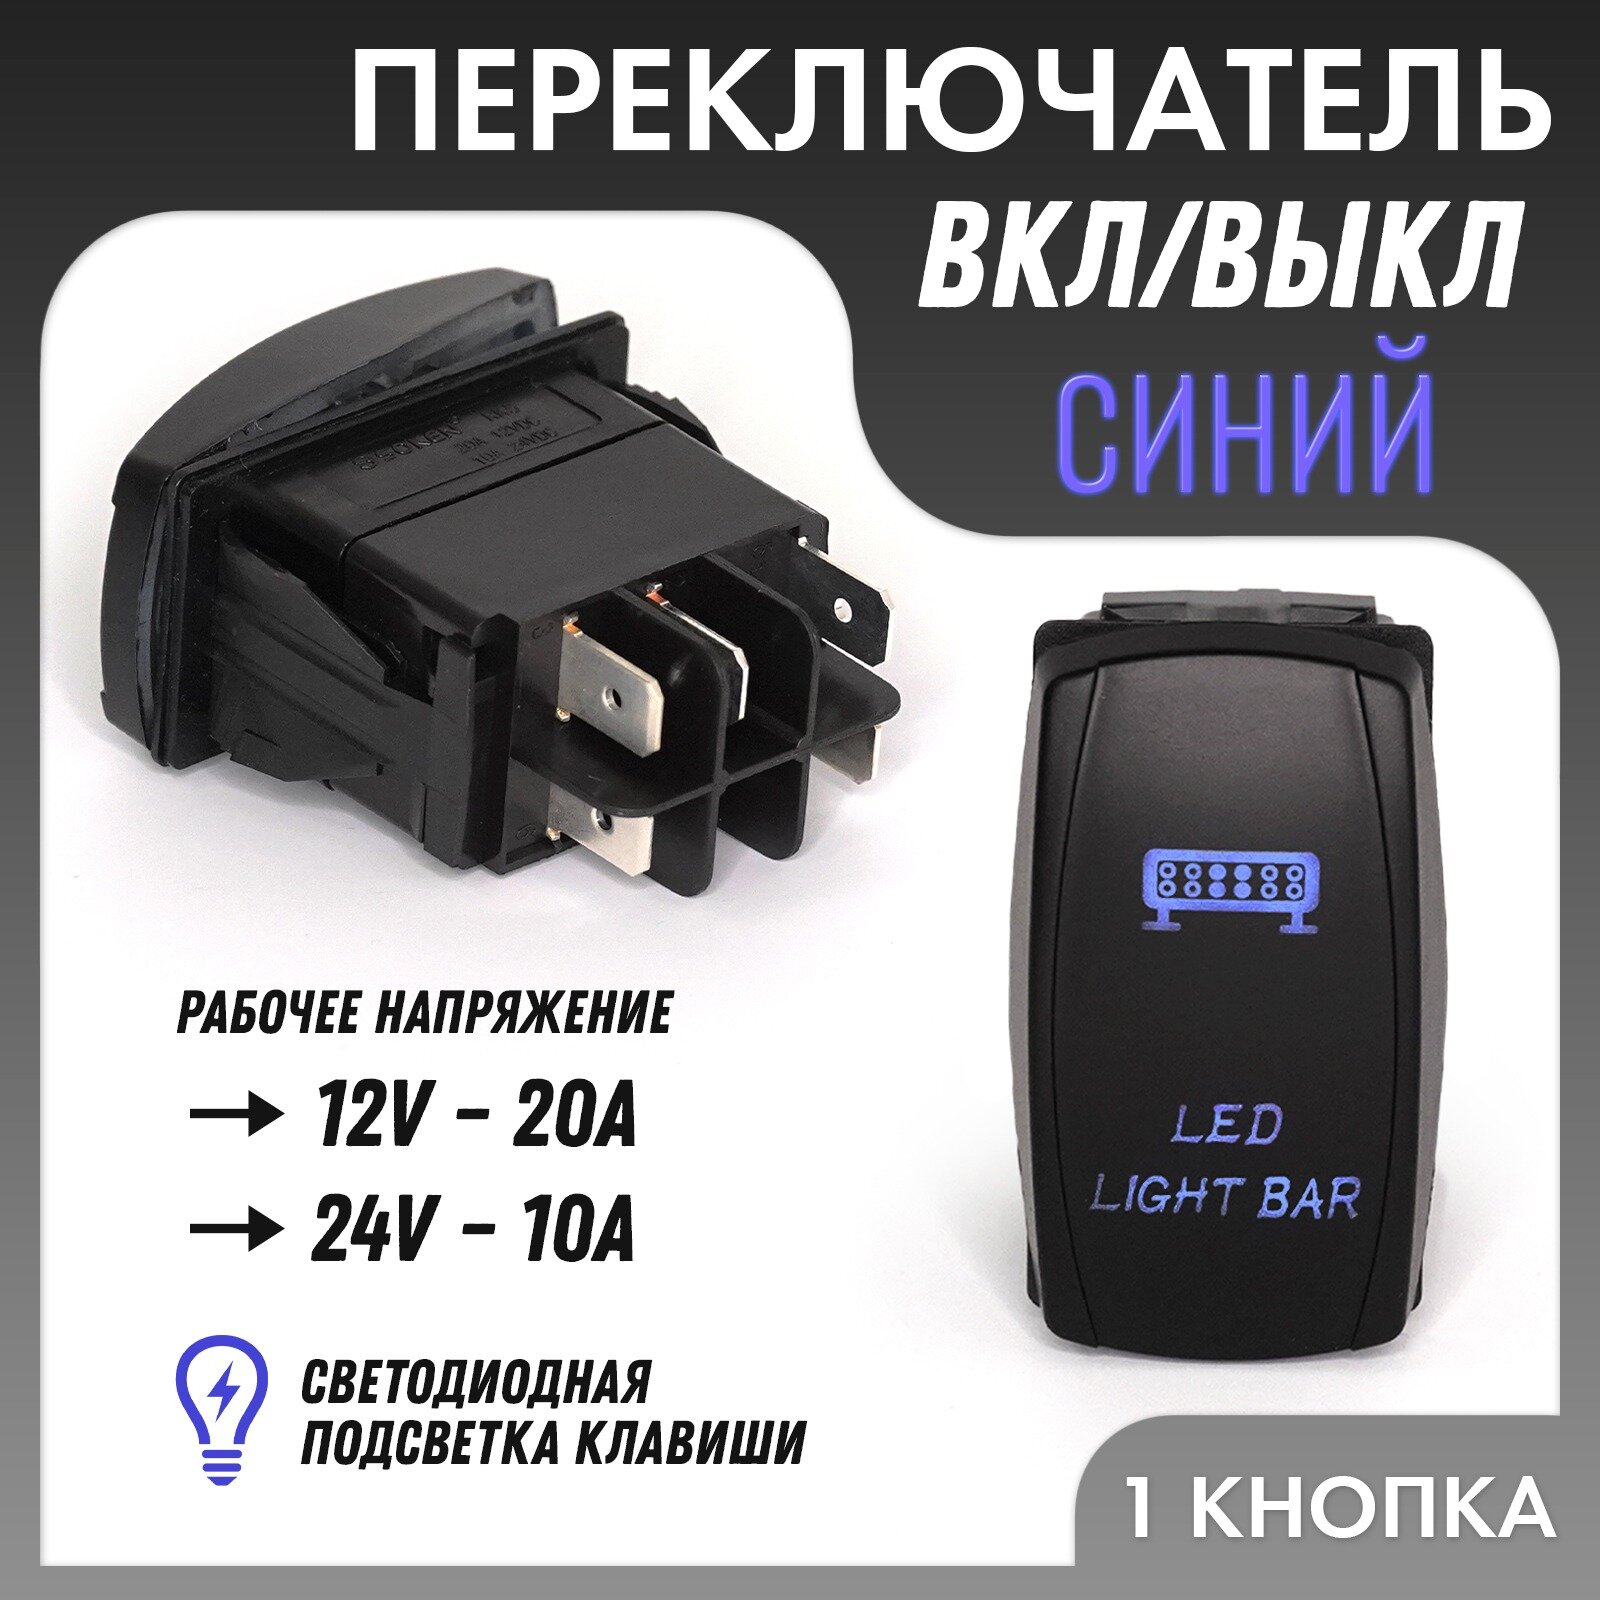 Универсальная кнопка ВКЛ/выкл светодиодной балки TS-31